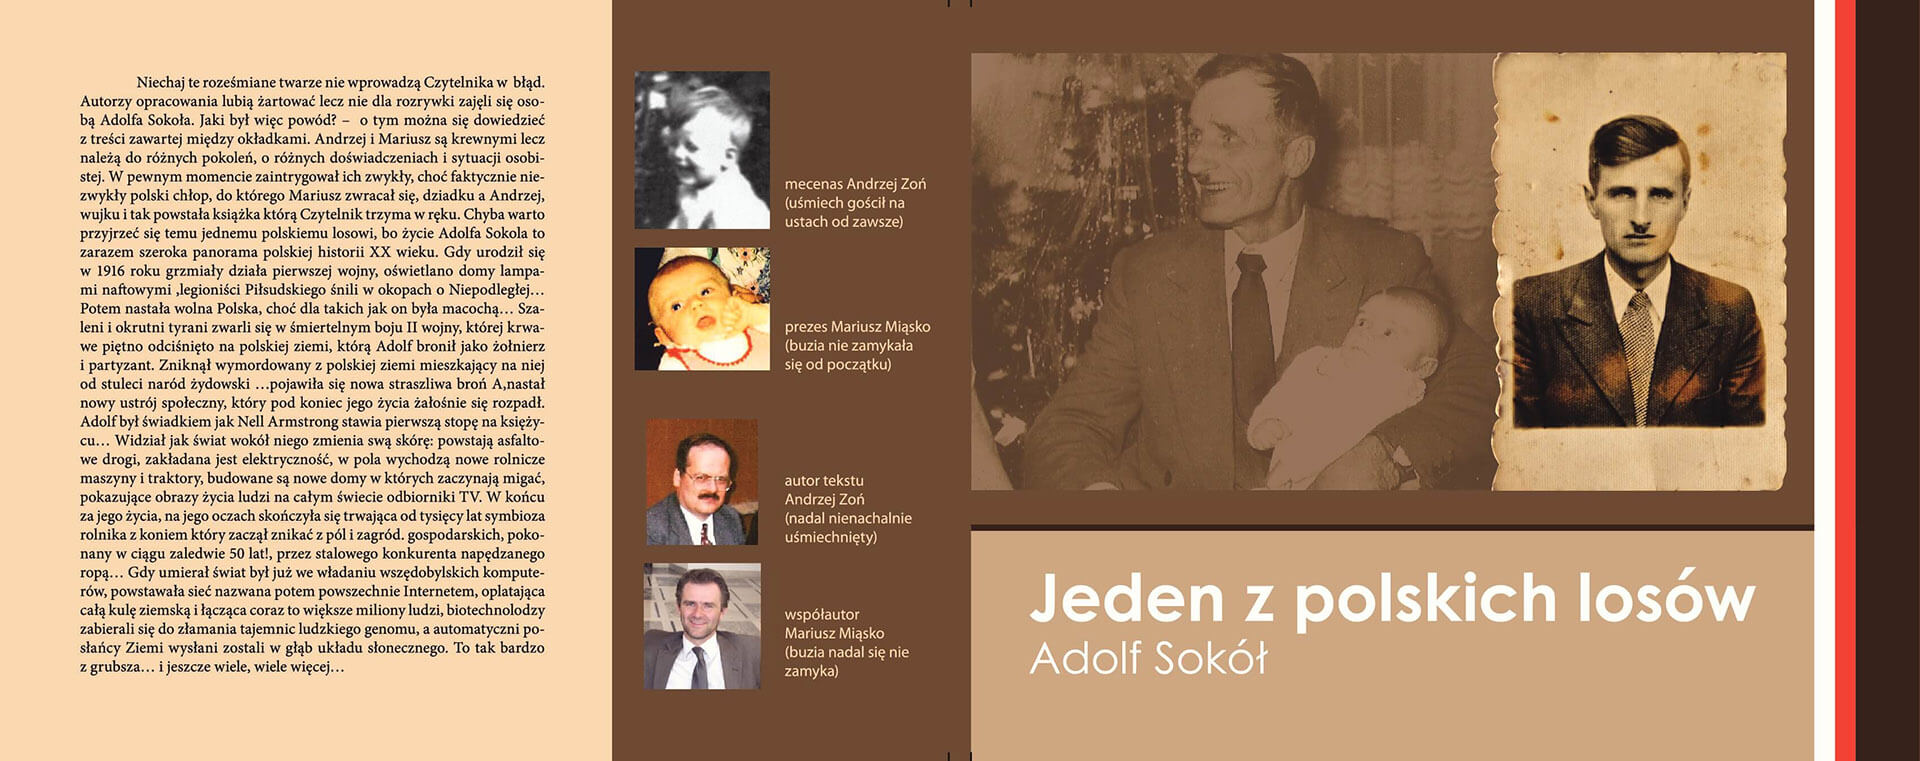 Adolf Sokół - jeden z polskich losów - Okładka książki